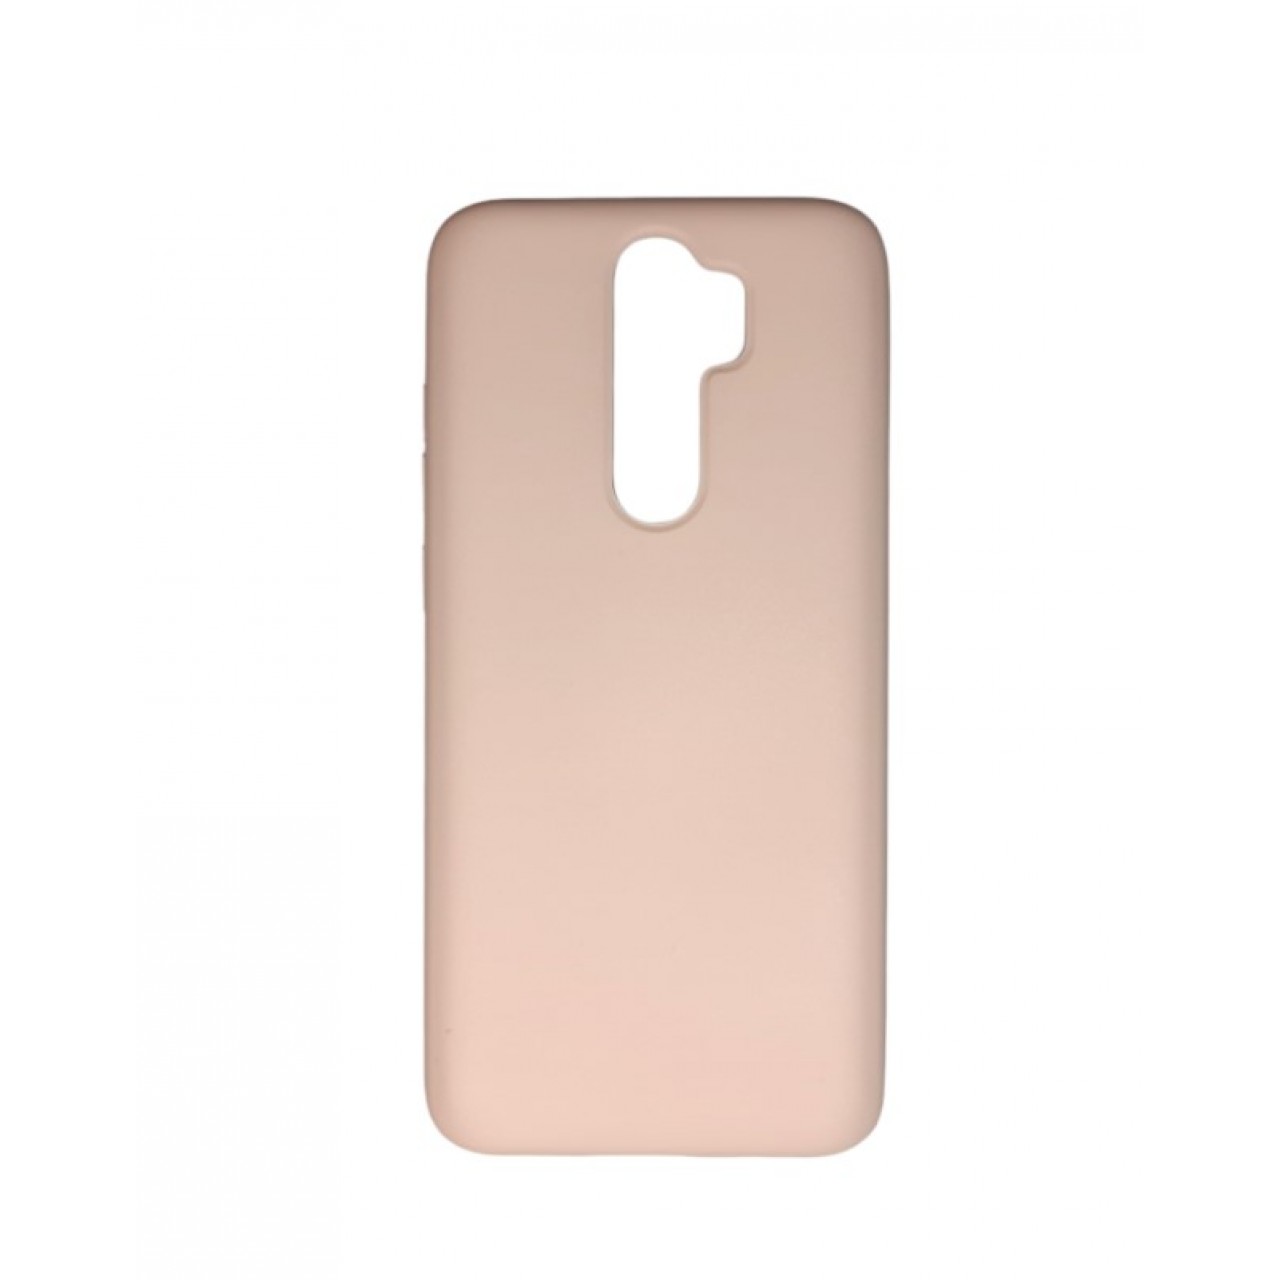 Θήκη Xiaomi Note 8 Pro Silicone soft-touch cover - 5147 - Μπεζ - ΟΕΜ